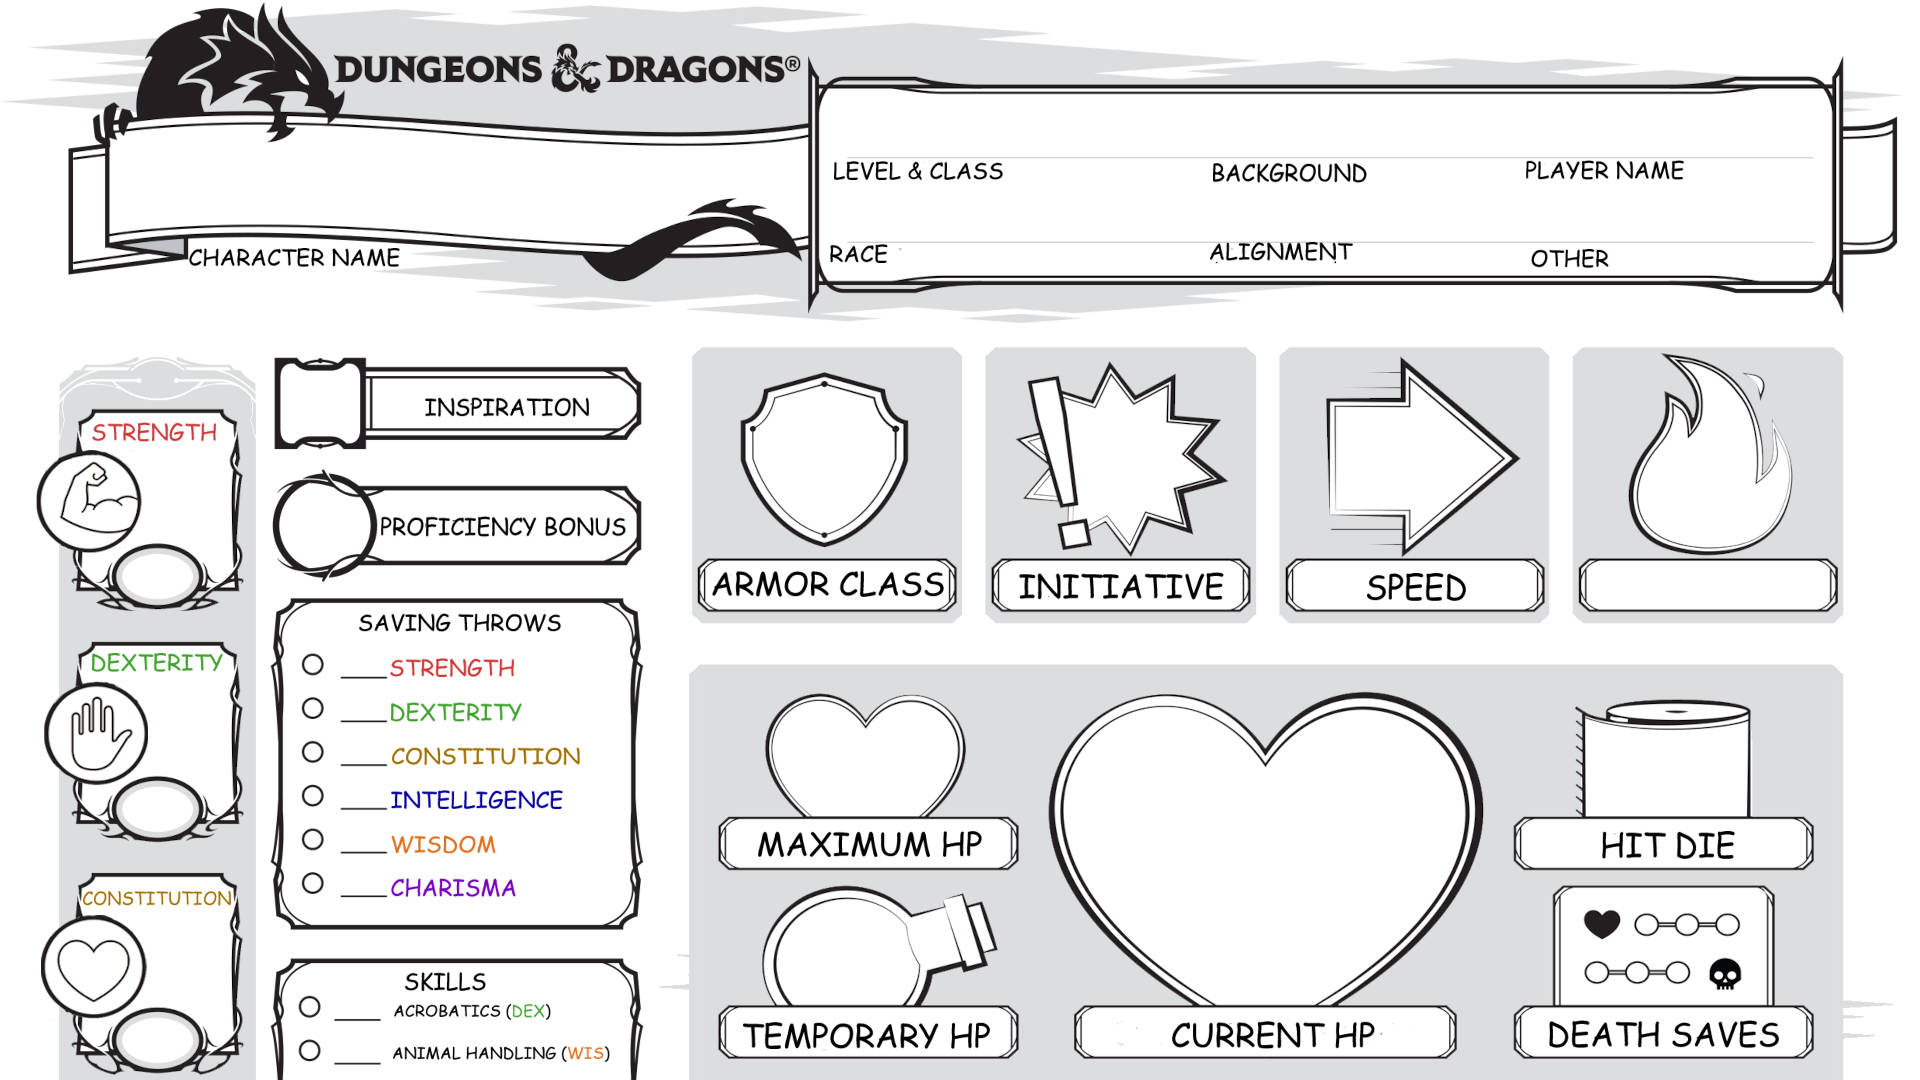 DnD character sheets - screenshot of a dyslexic friendly D&D character sheet